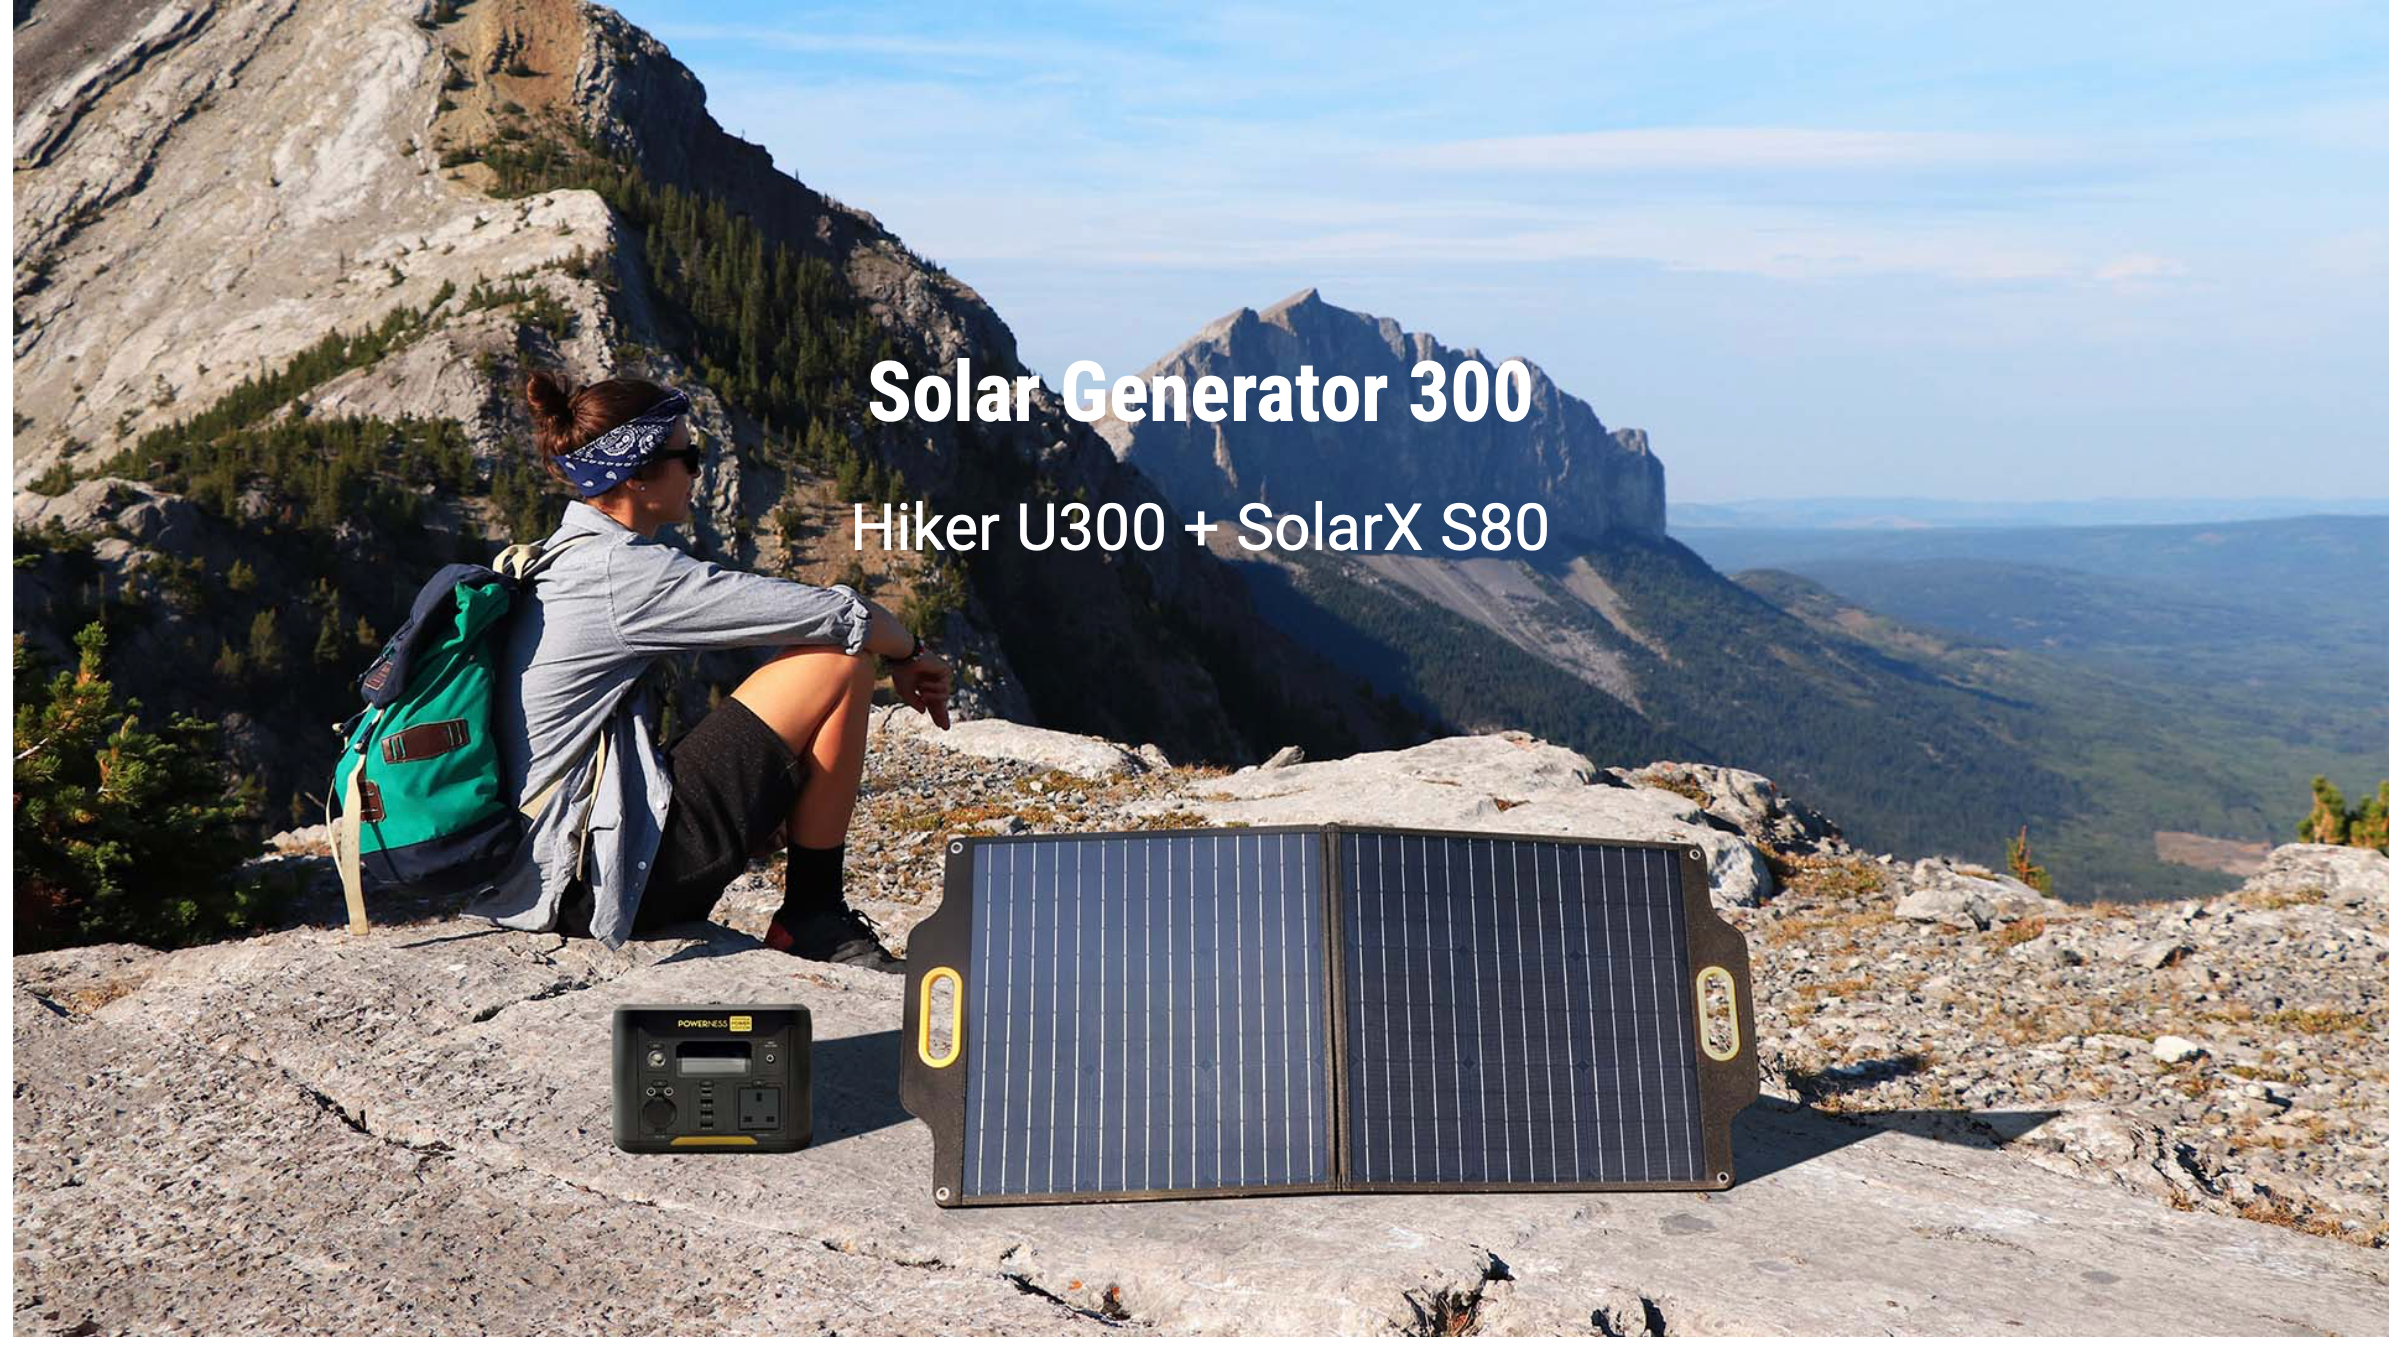 Solar generator 300